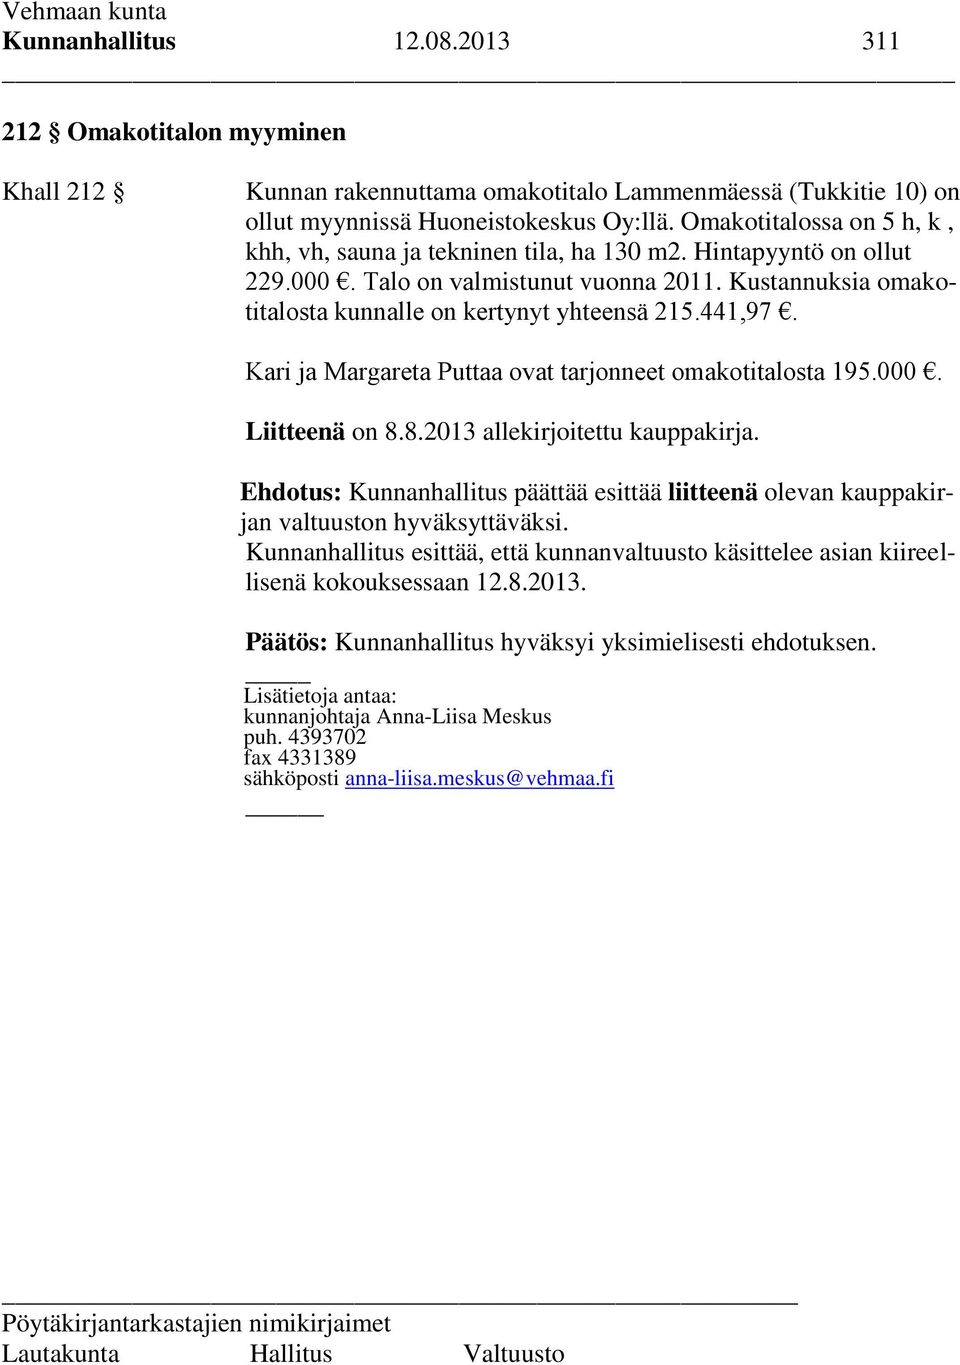 441,97. Kari ja Margareta Puttaa ovat tarjonneet omakotitalosta 195.000. Liitteenä on 8.8.2013 allekirjoitettu kauppakirja.